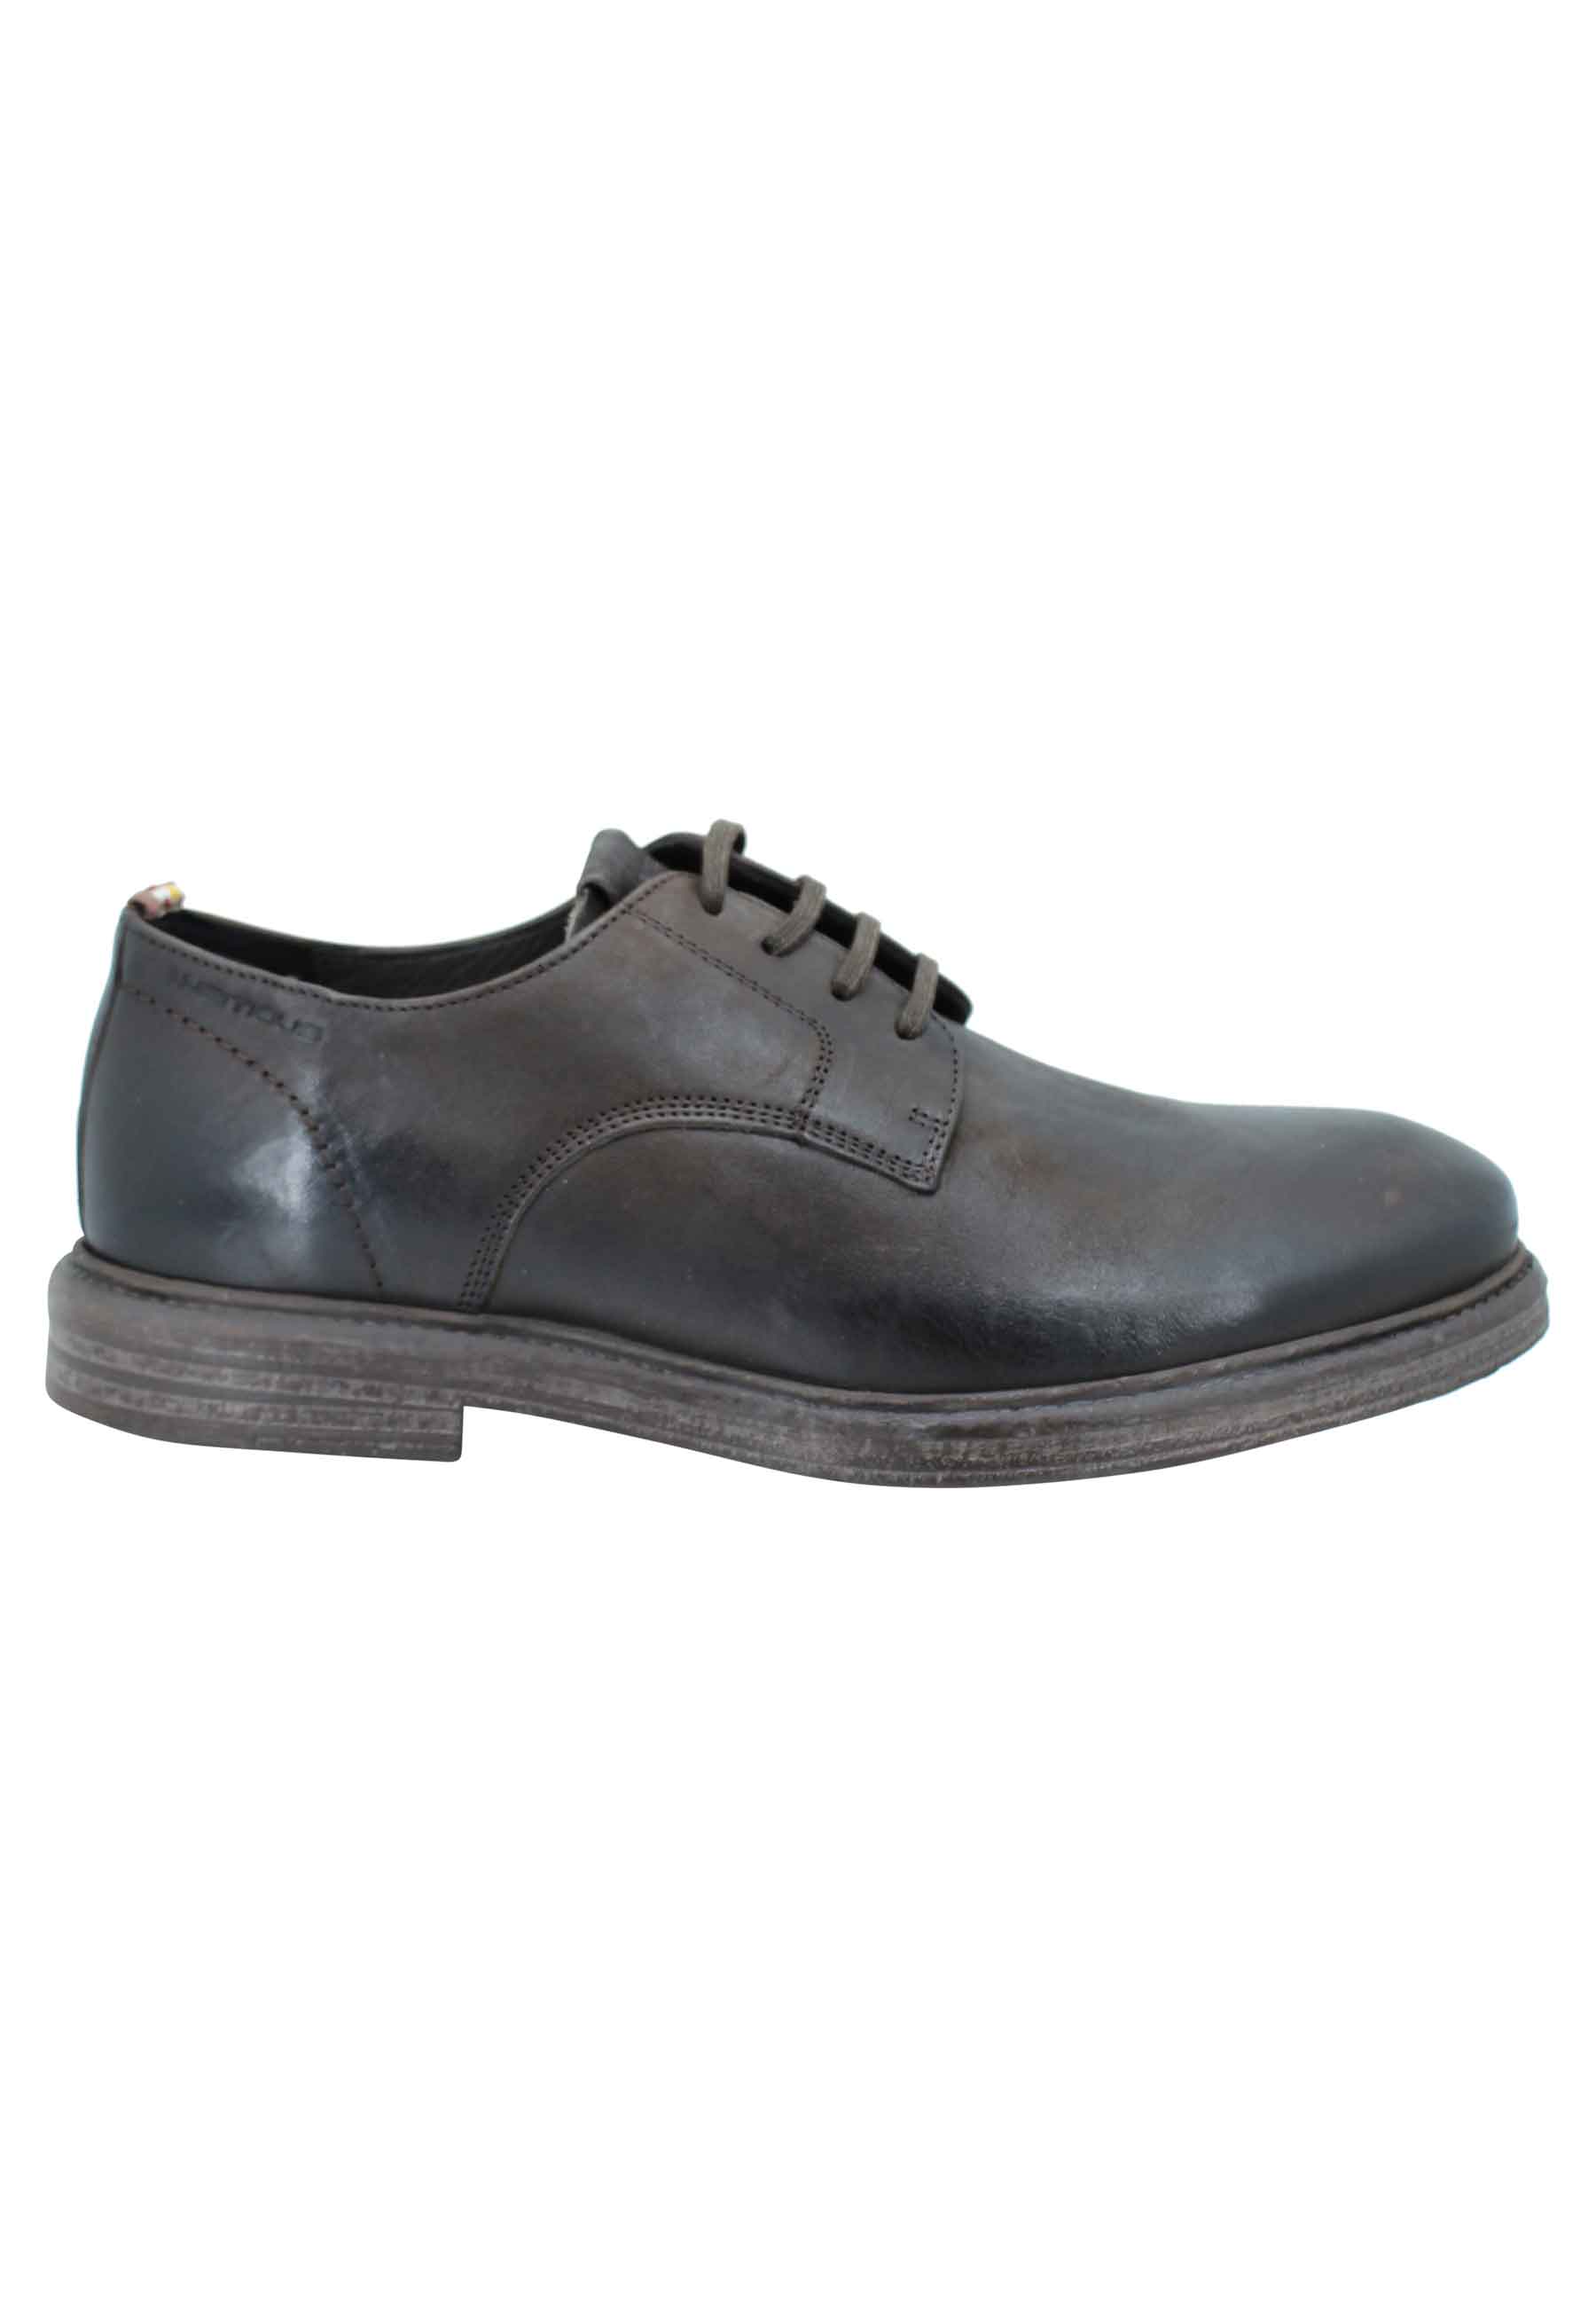 Chaussures à lacets pour hommes en cuir marron, semelle en caoutchouc et première à mémoire de forme